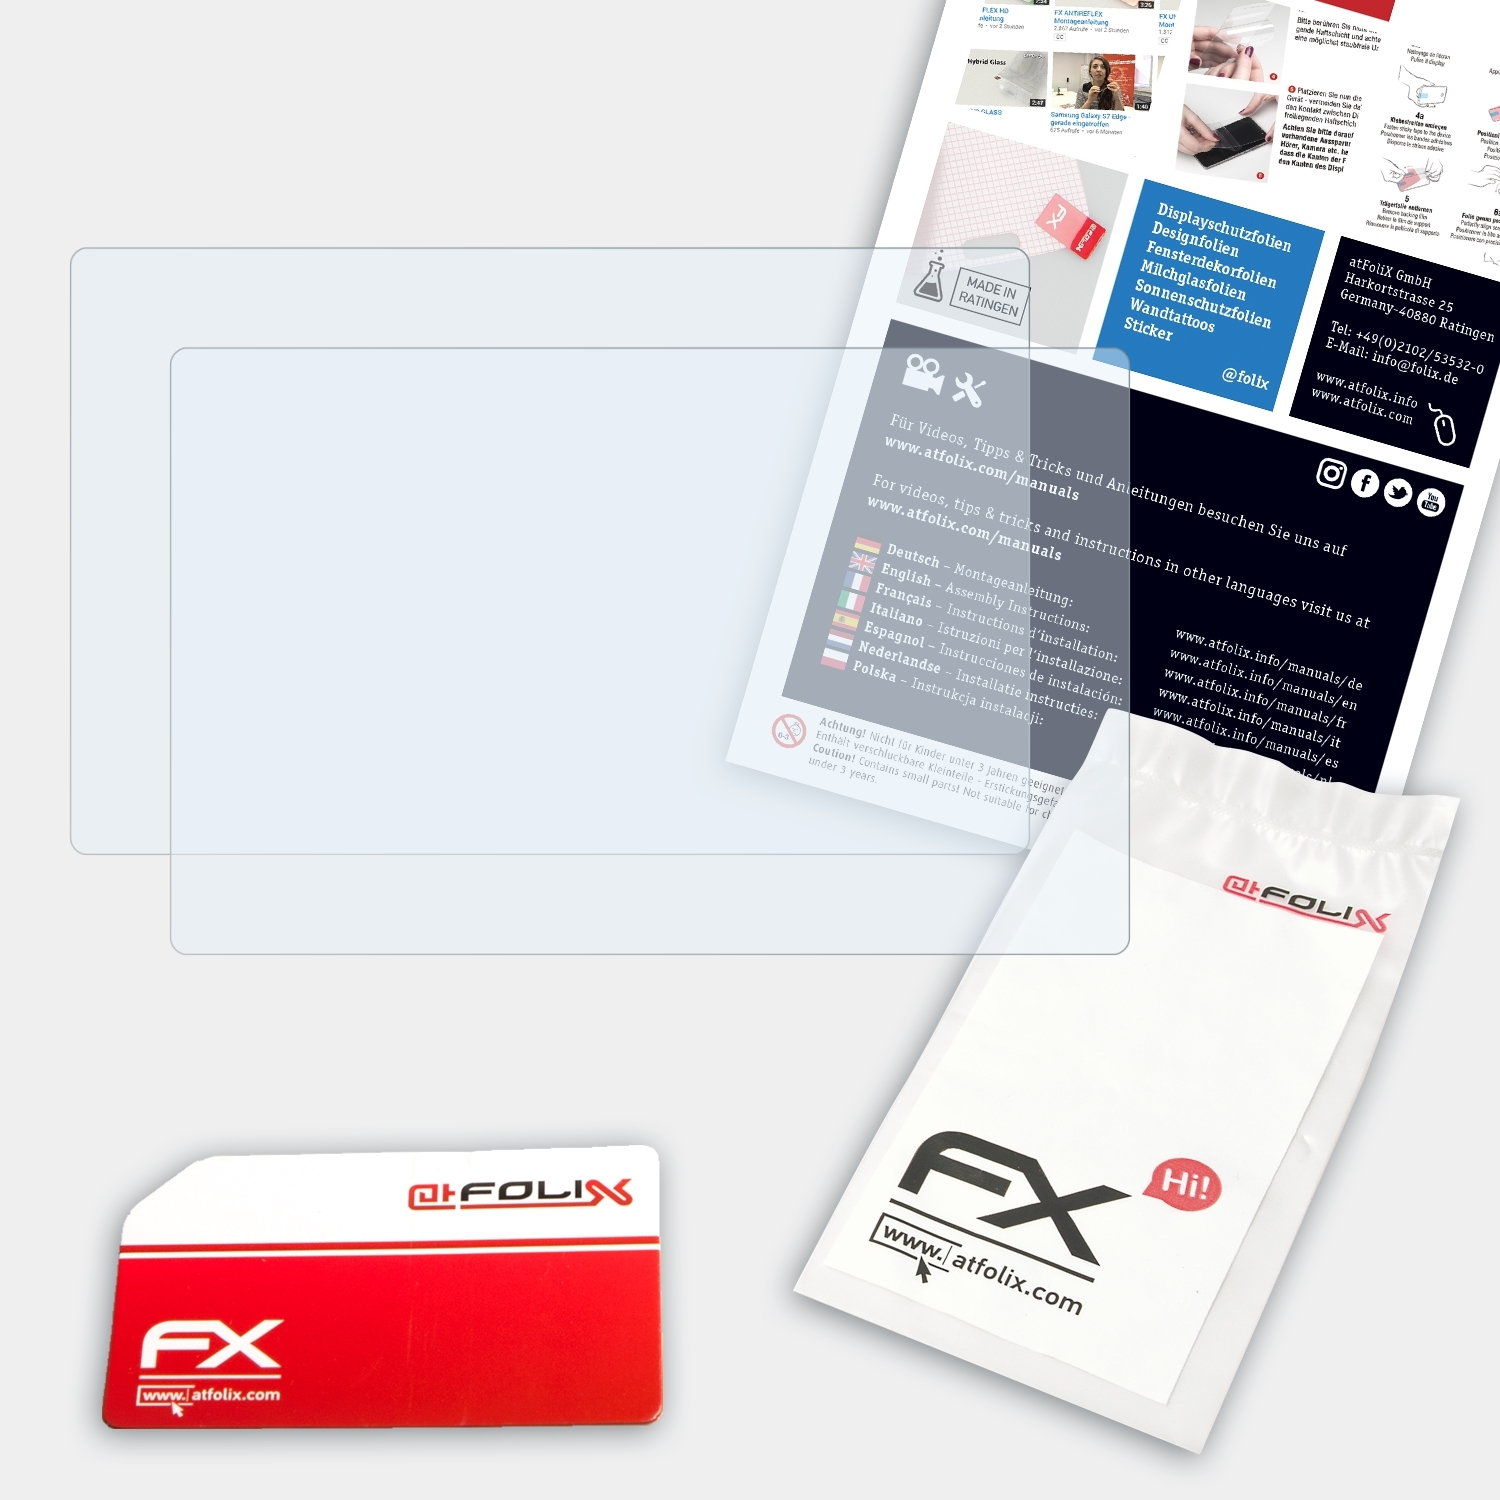 2x XP-PEN Artist 10S) Displayschutz(für ATFOLIX FX-Clear